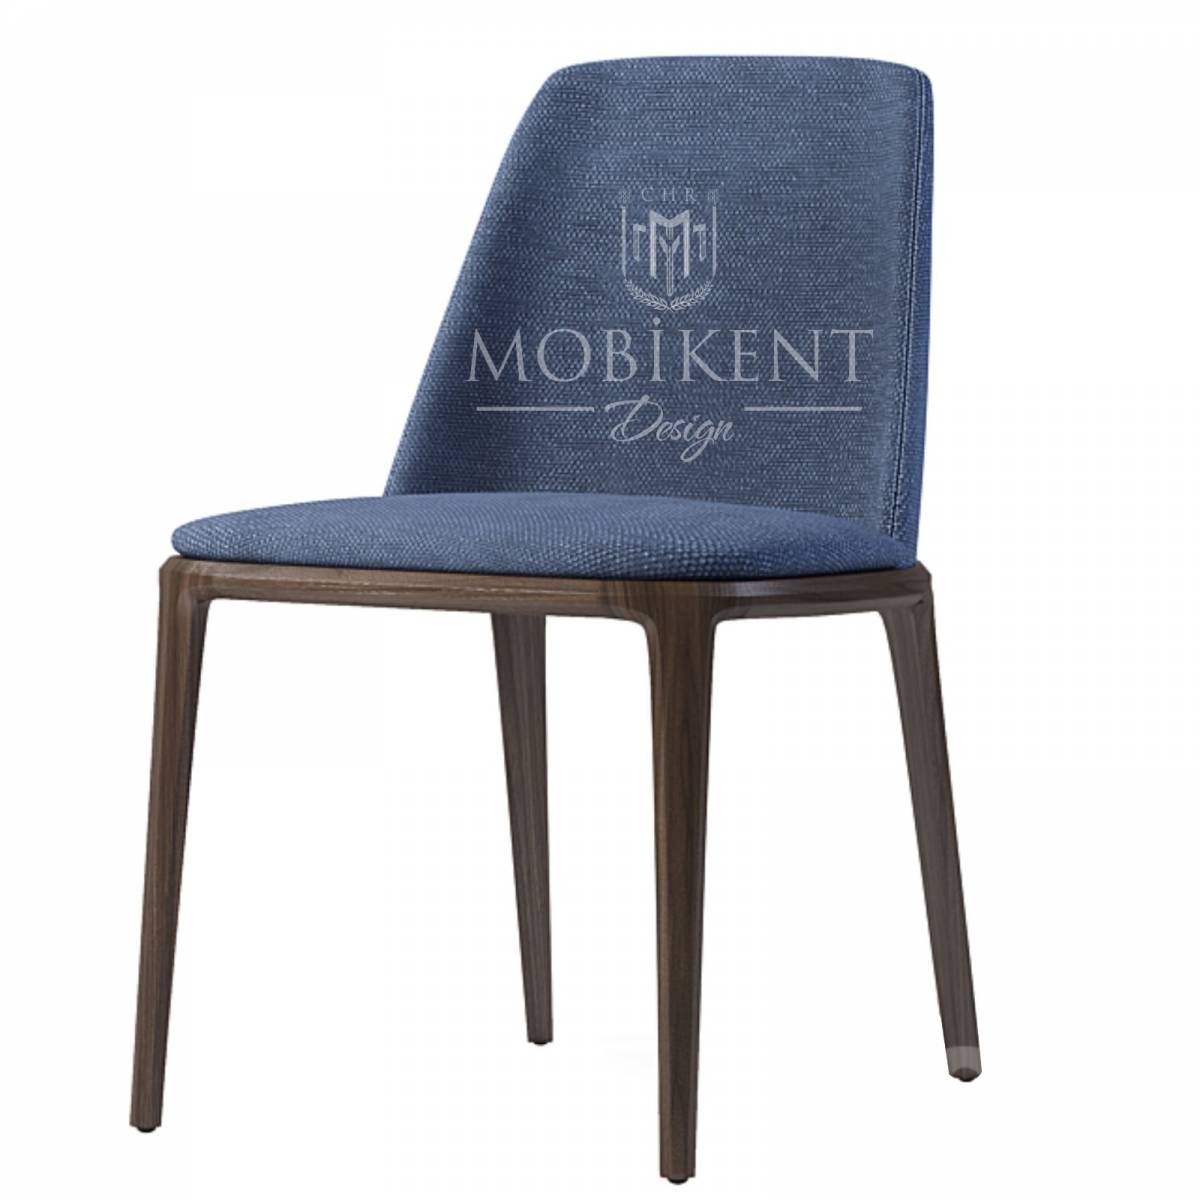 Chaise en tissus personnalisable pour café- MobiKent Design